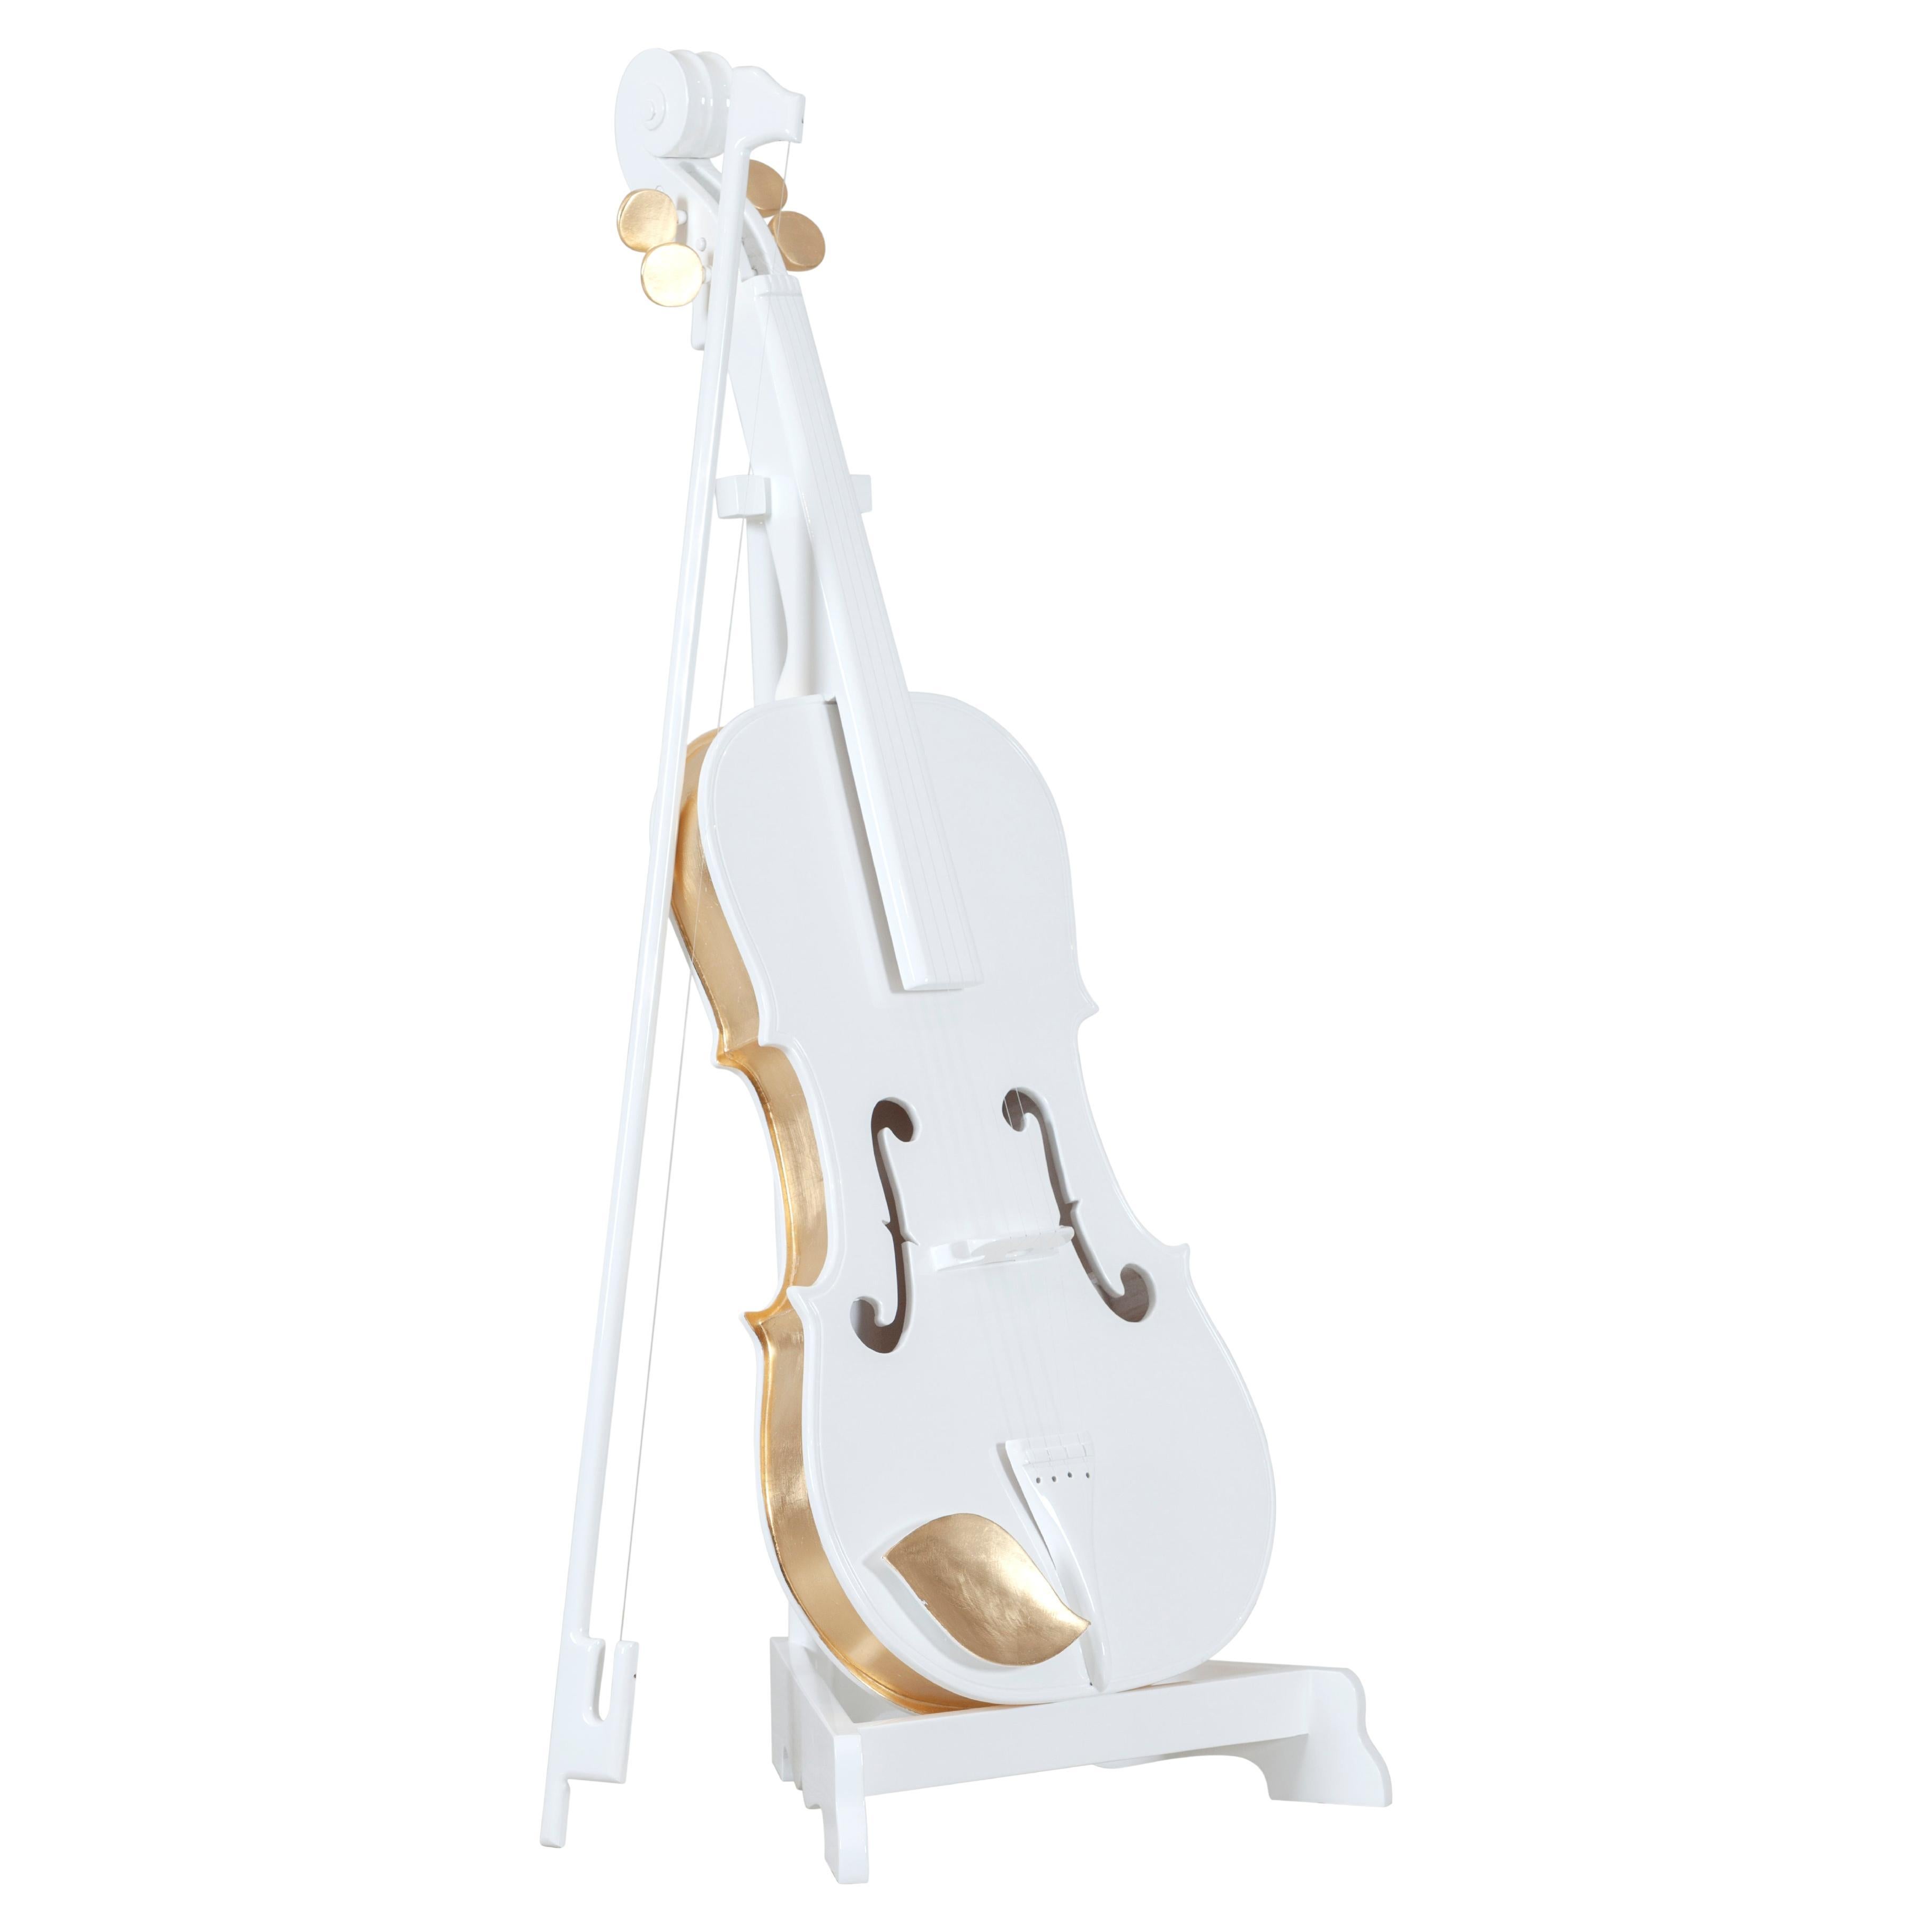 Dekorative Brahms Cello-Skulptur, handgefertigt in Portugal von Lusitanus Home